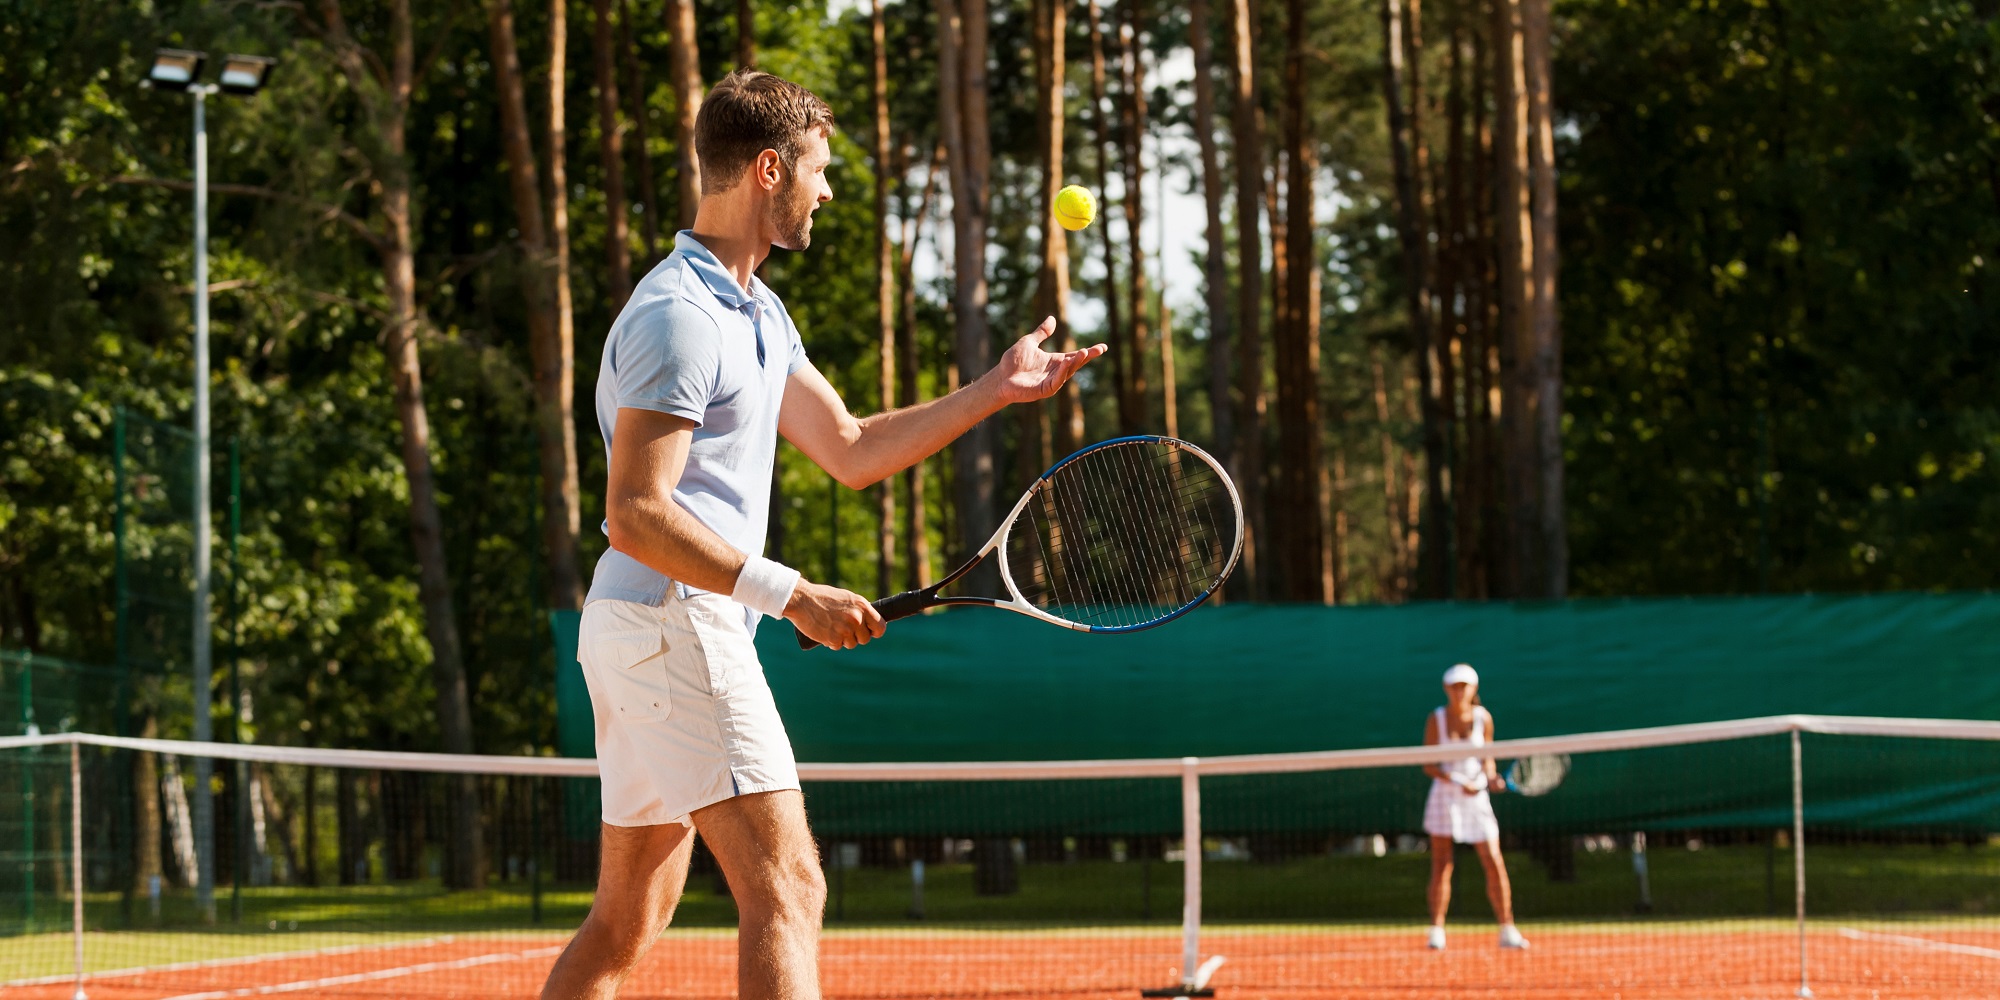 Tennisplatz, Hintergrund mit Wald, Zwei Tennisspieler